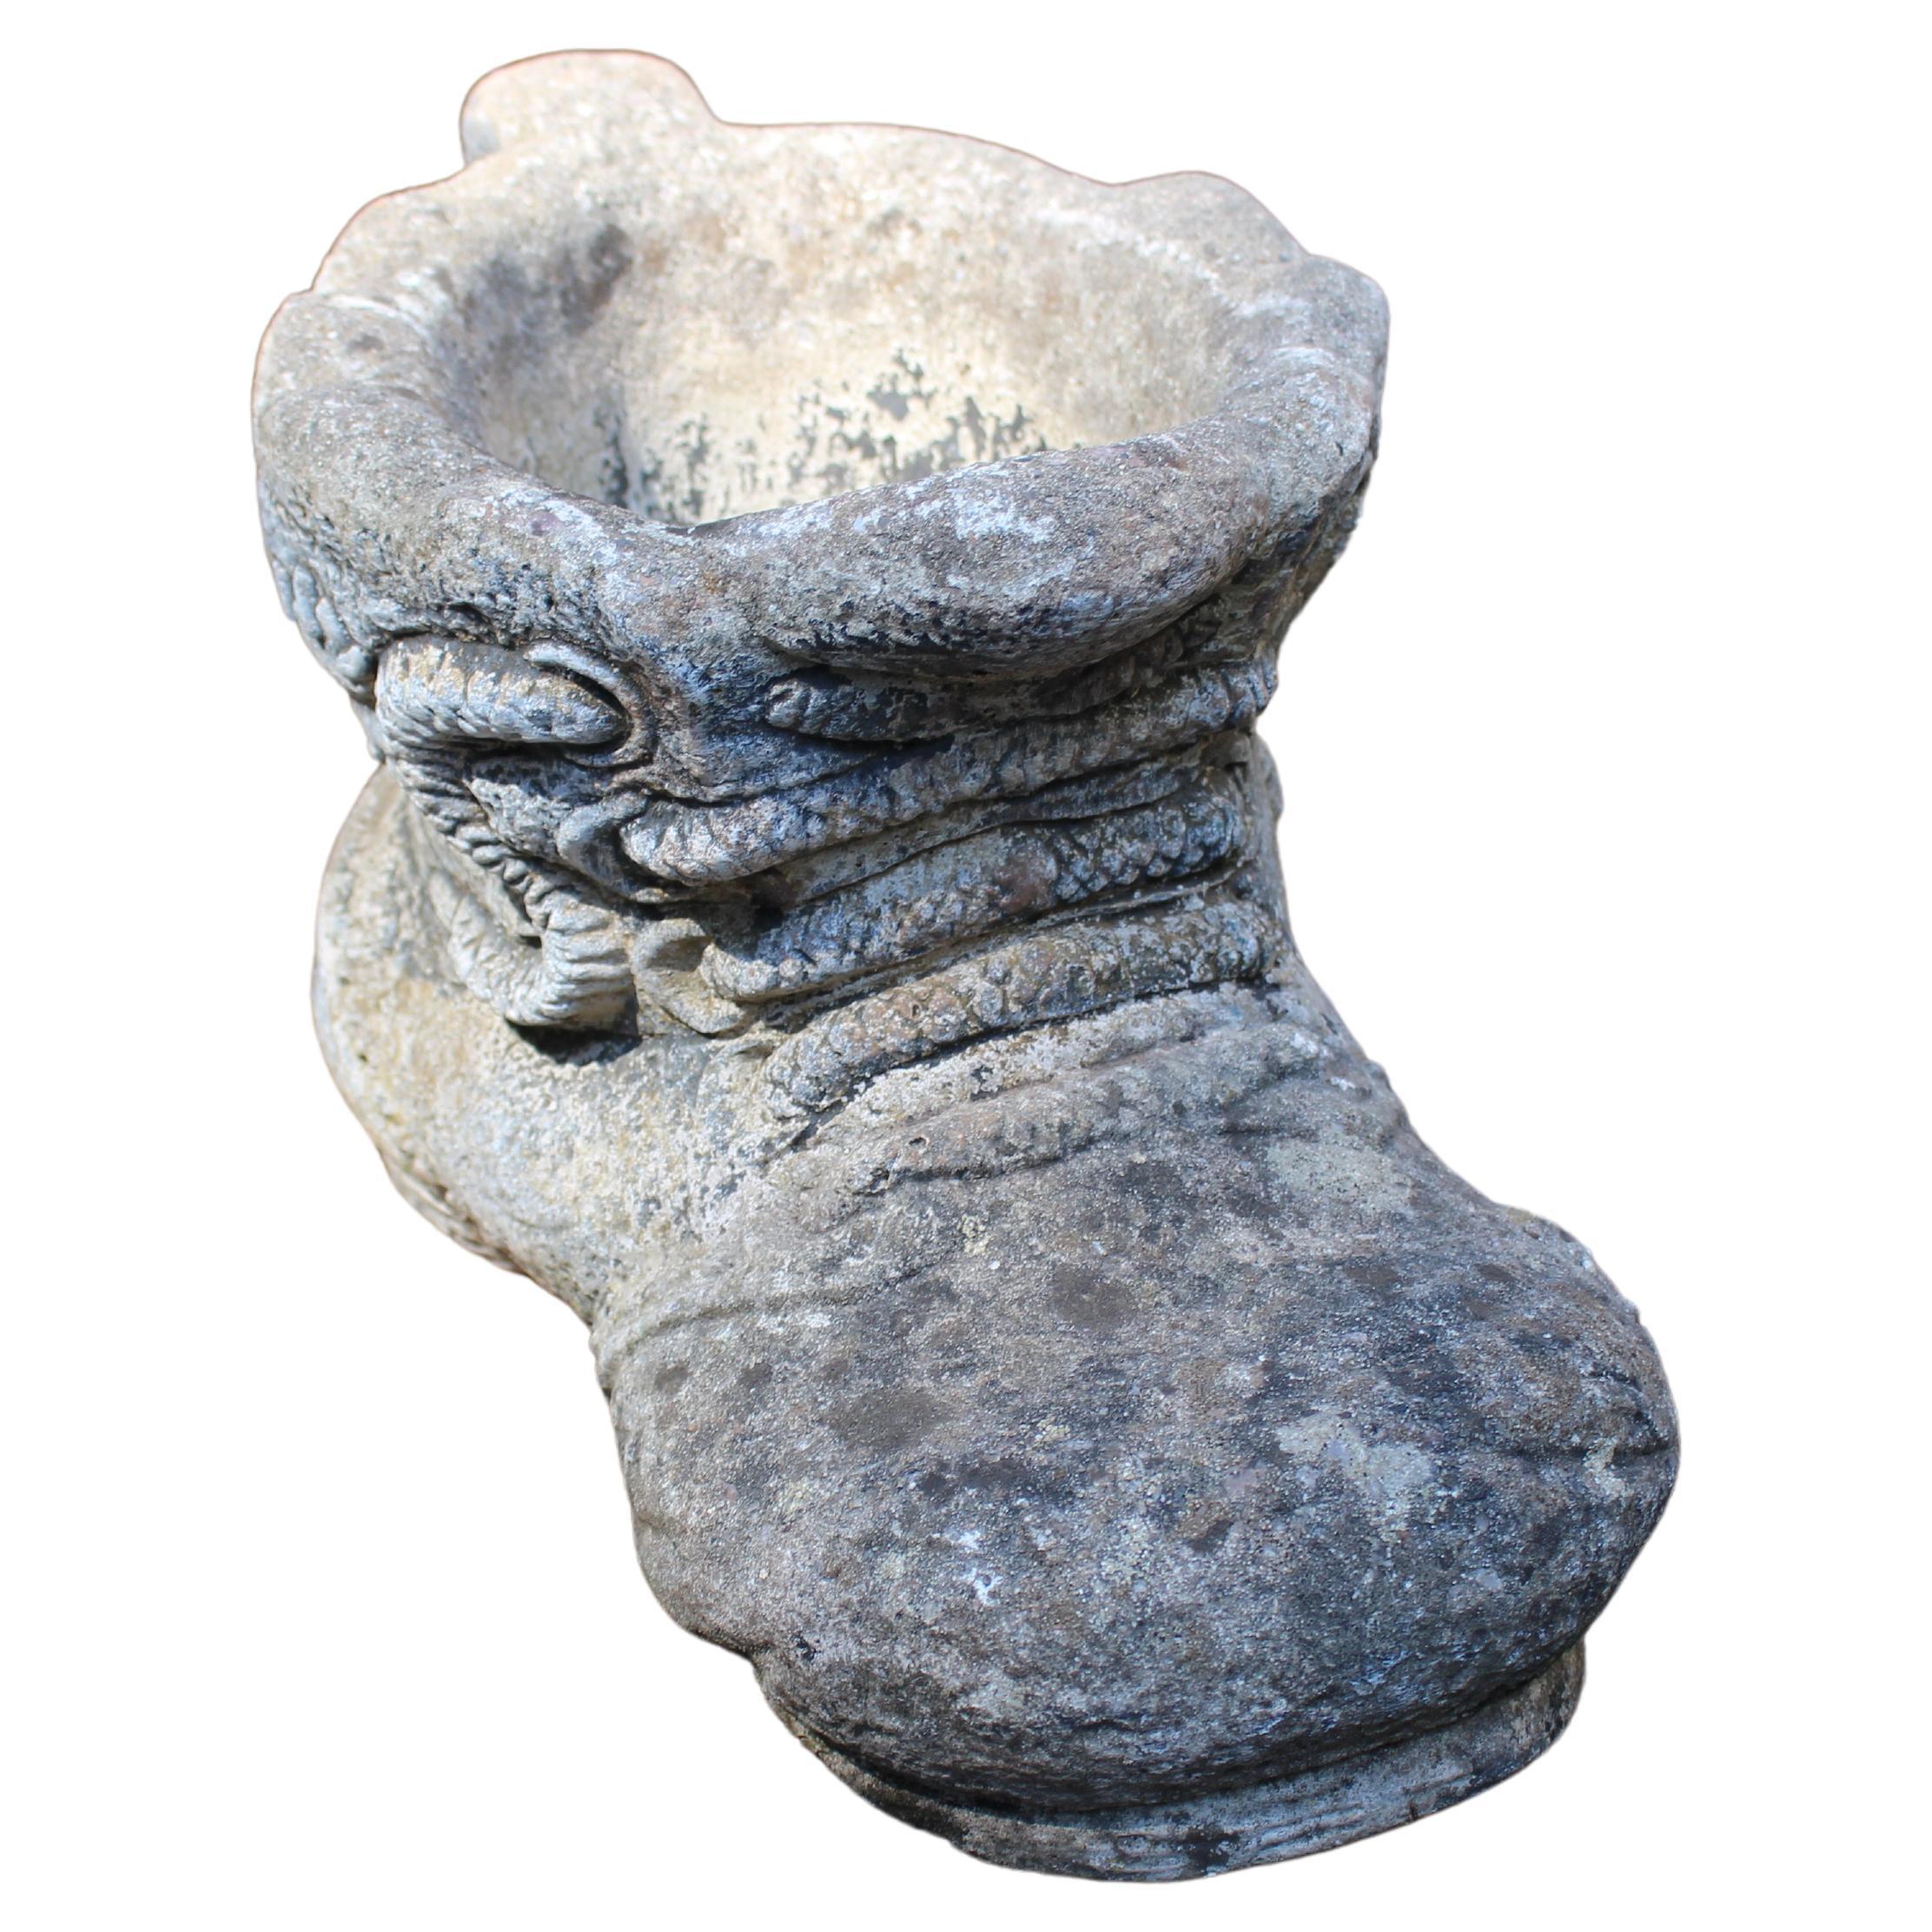 Englisches Pflanzgefäß aus Steinguss in Form eines Riesenschuhs